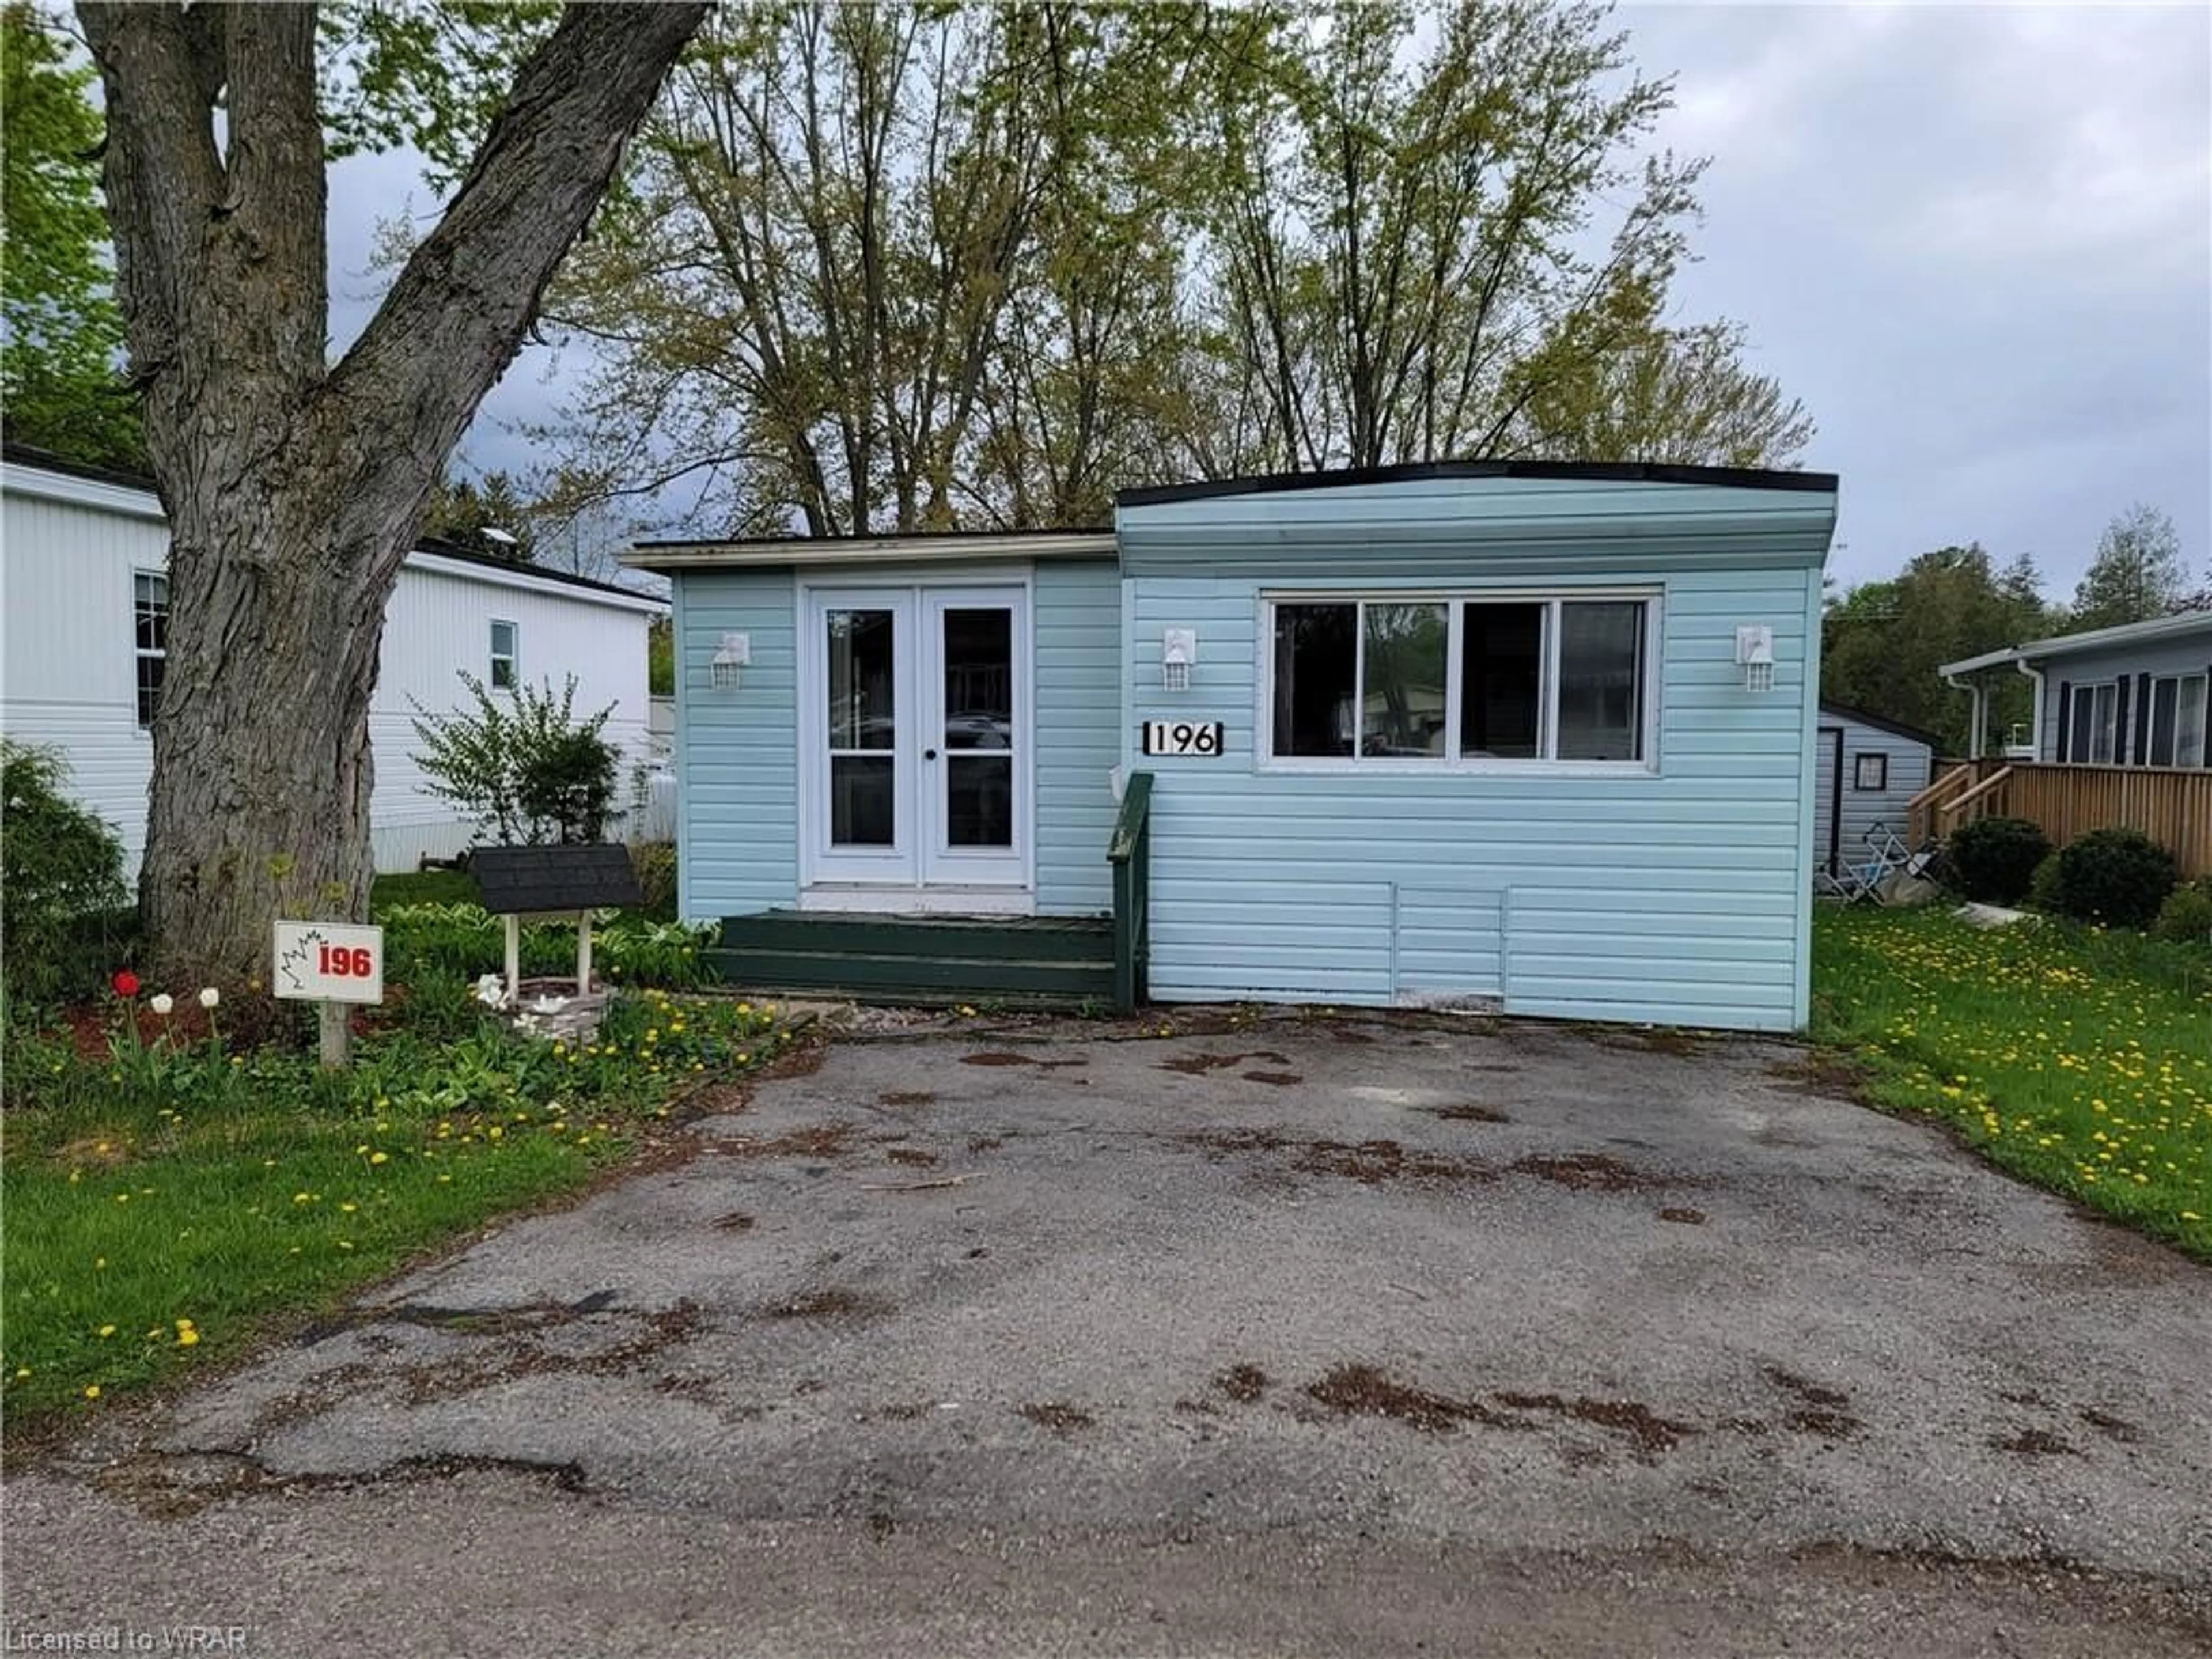 Cottage for 580 Beaver Creek Rd #196, Waterloo Ontario N2J 3Z4